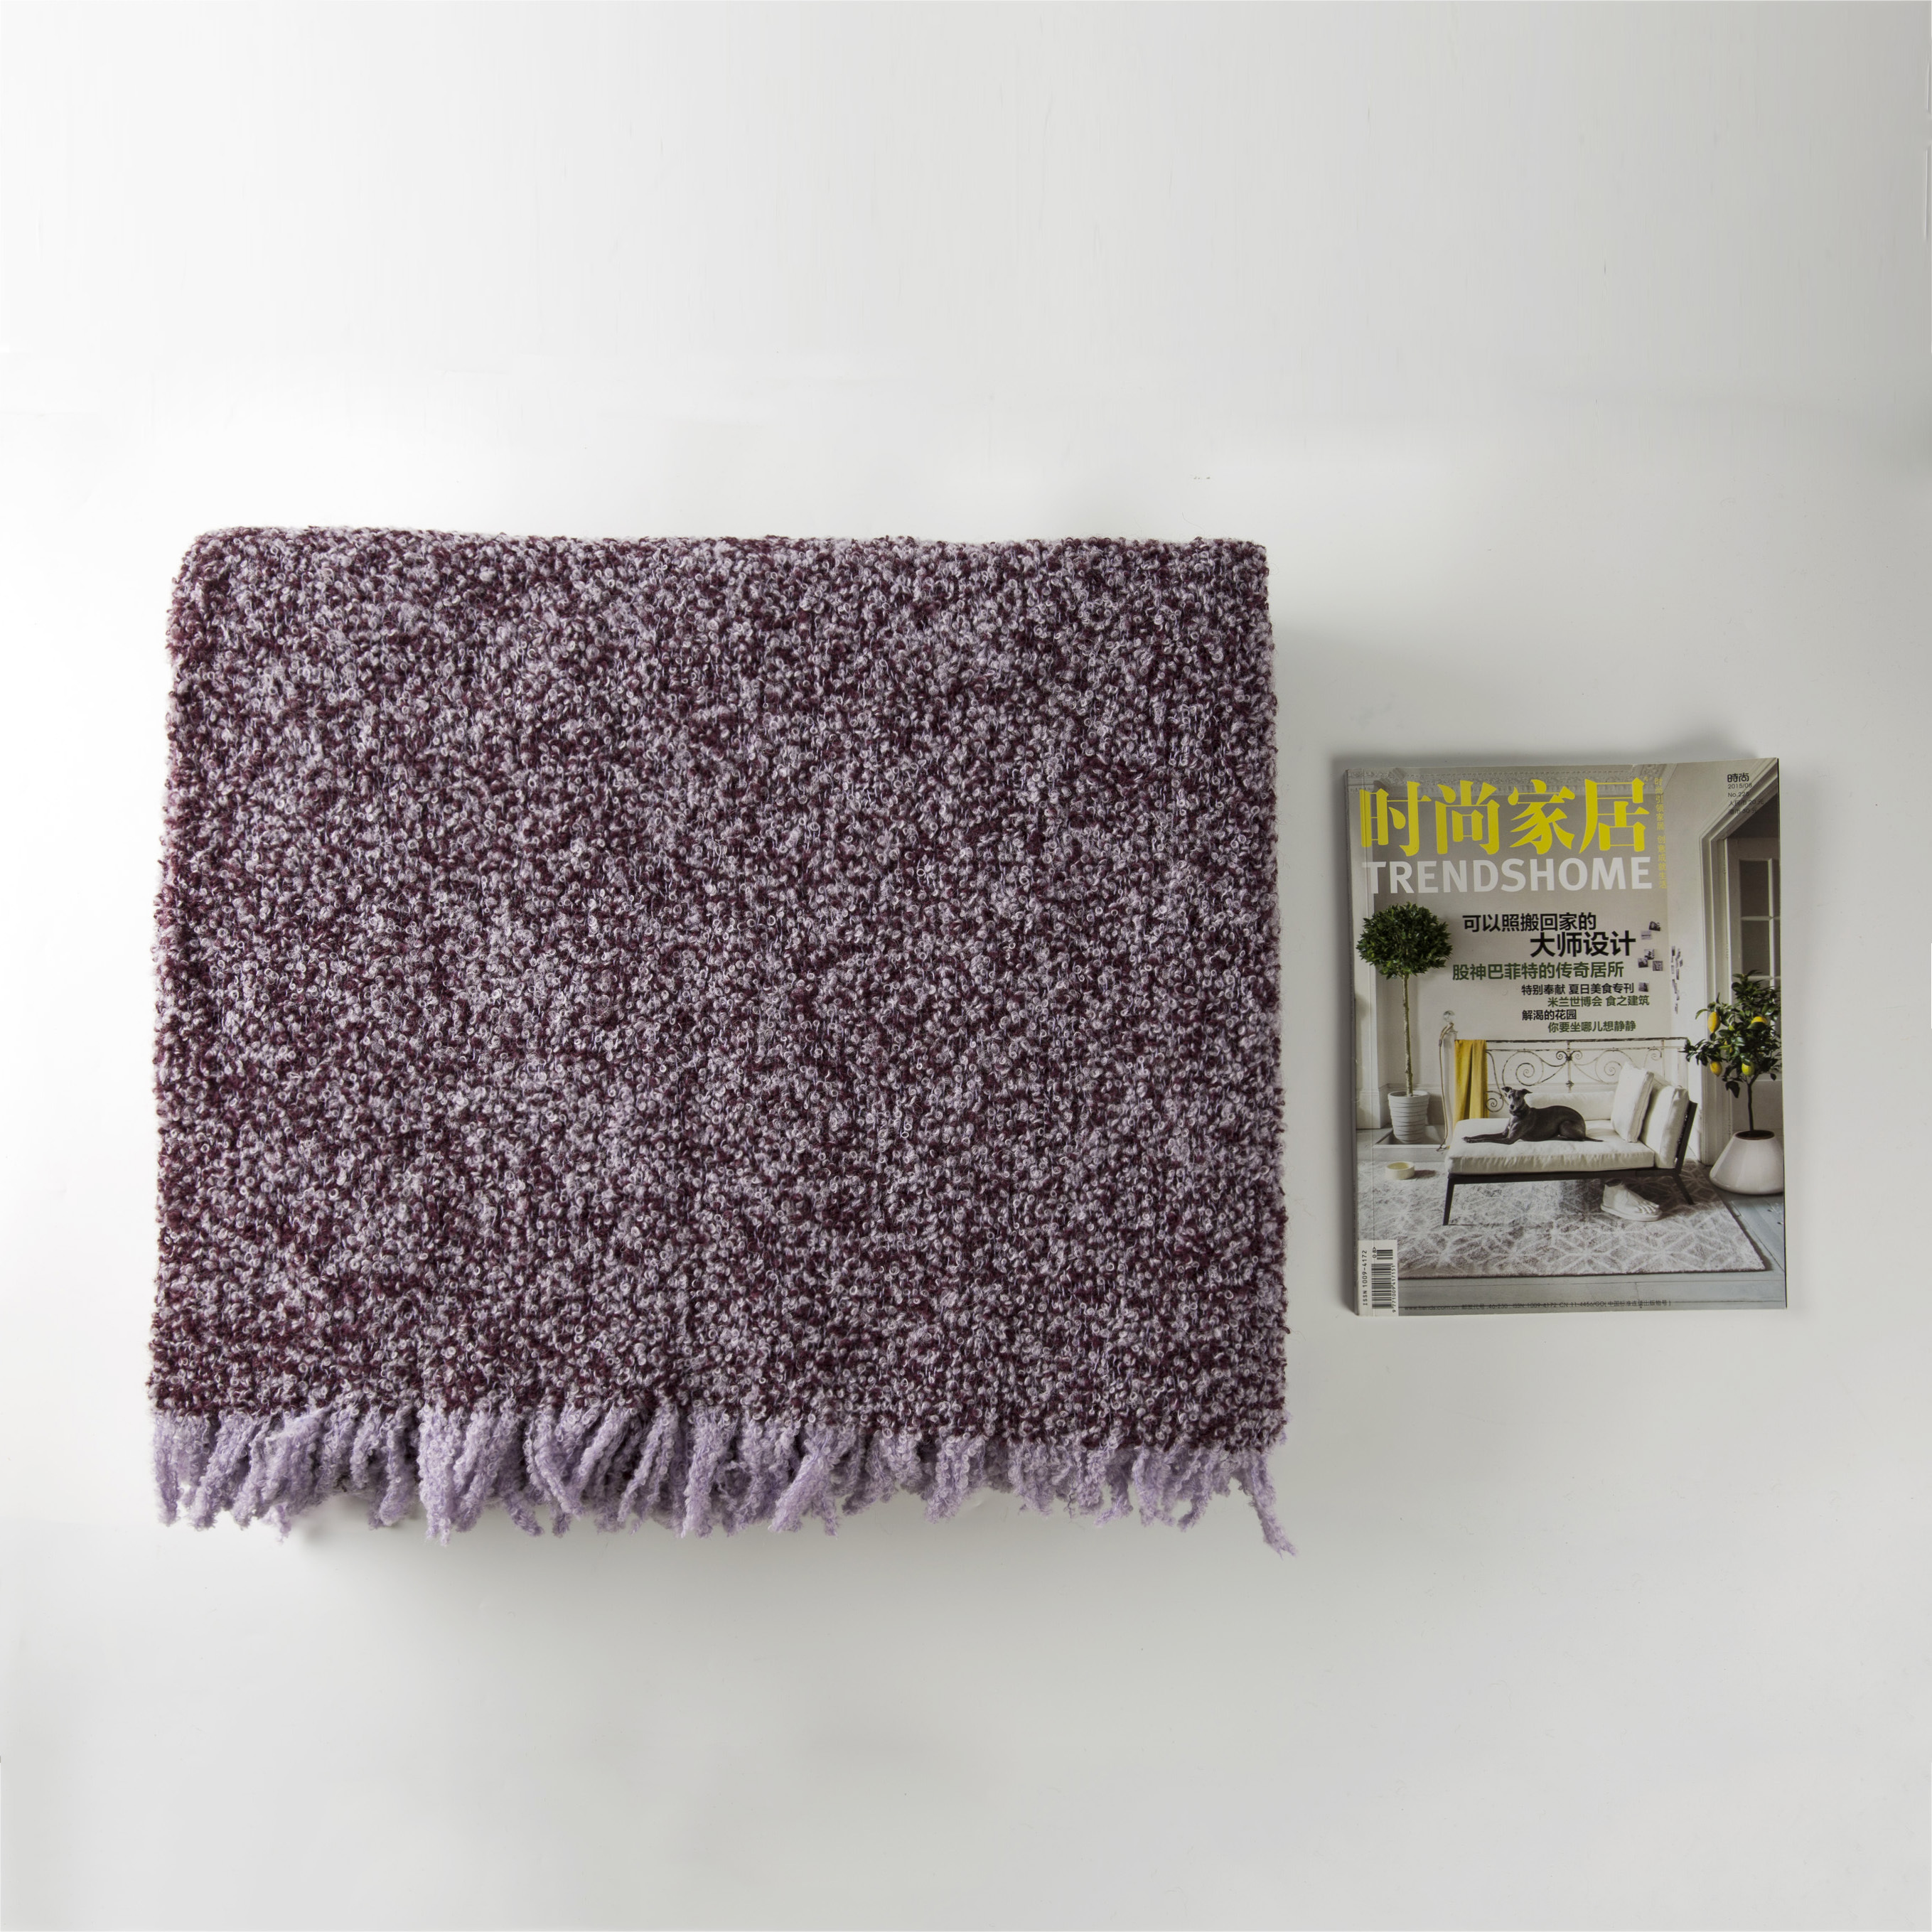 意大利原产SP Giardino Segreto混色美利奴羊毛毯沙发毯盖毯 深紫色